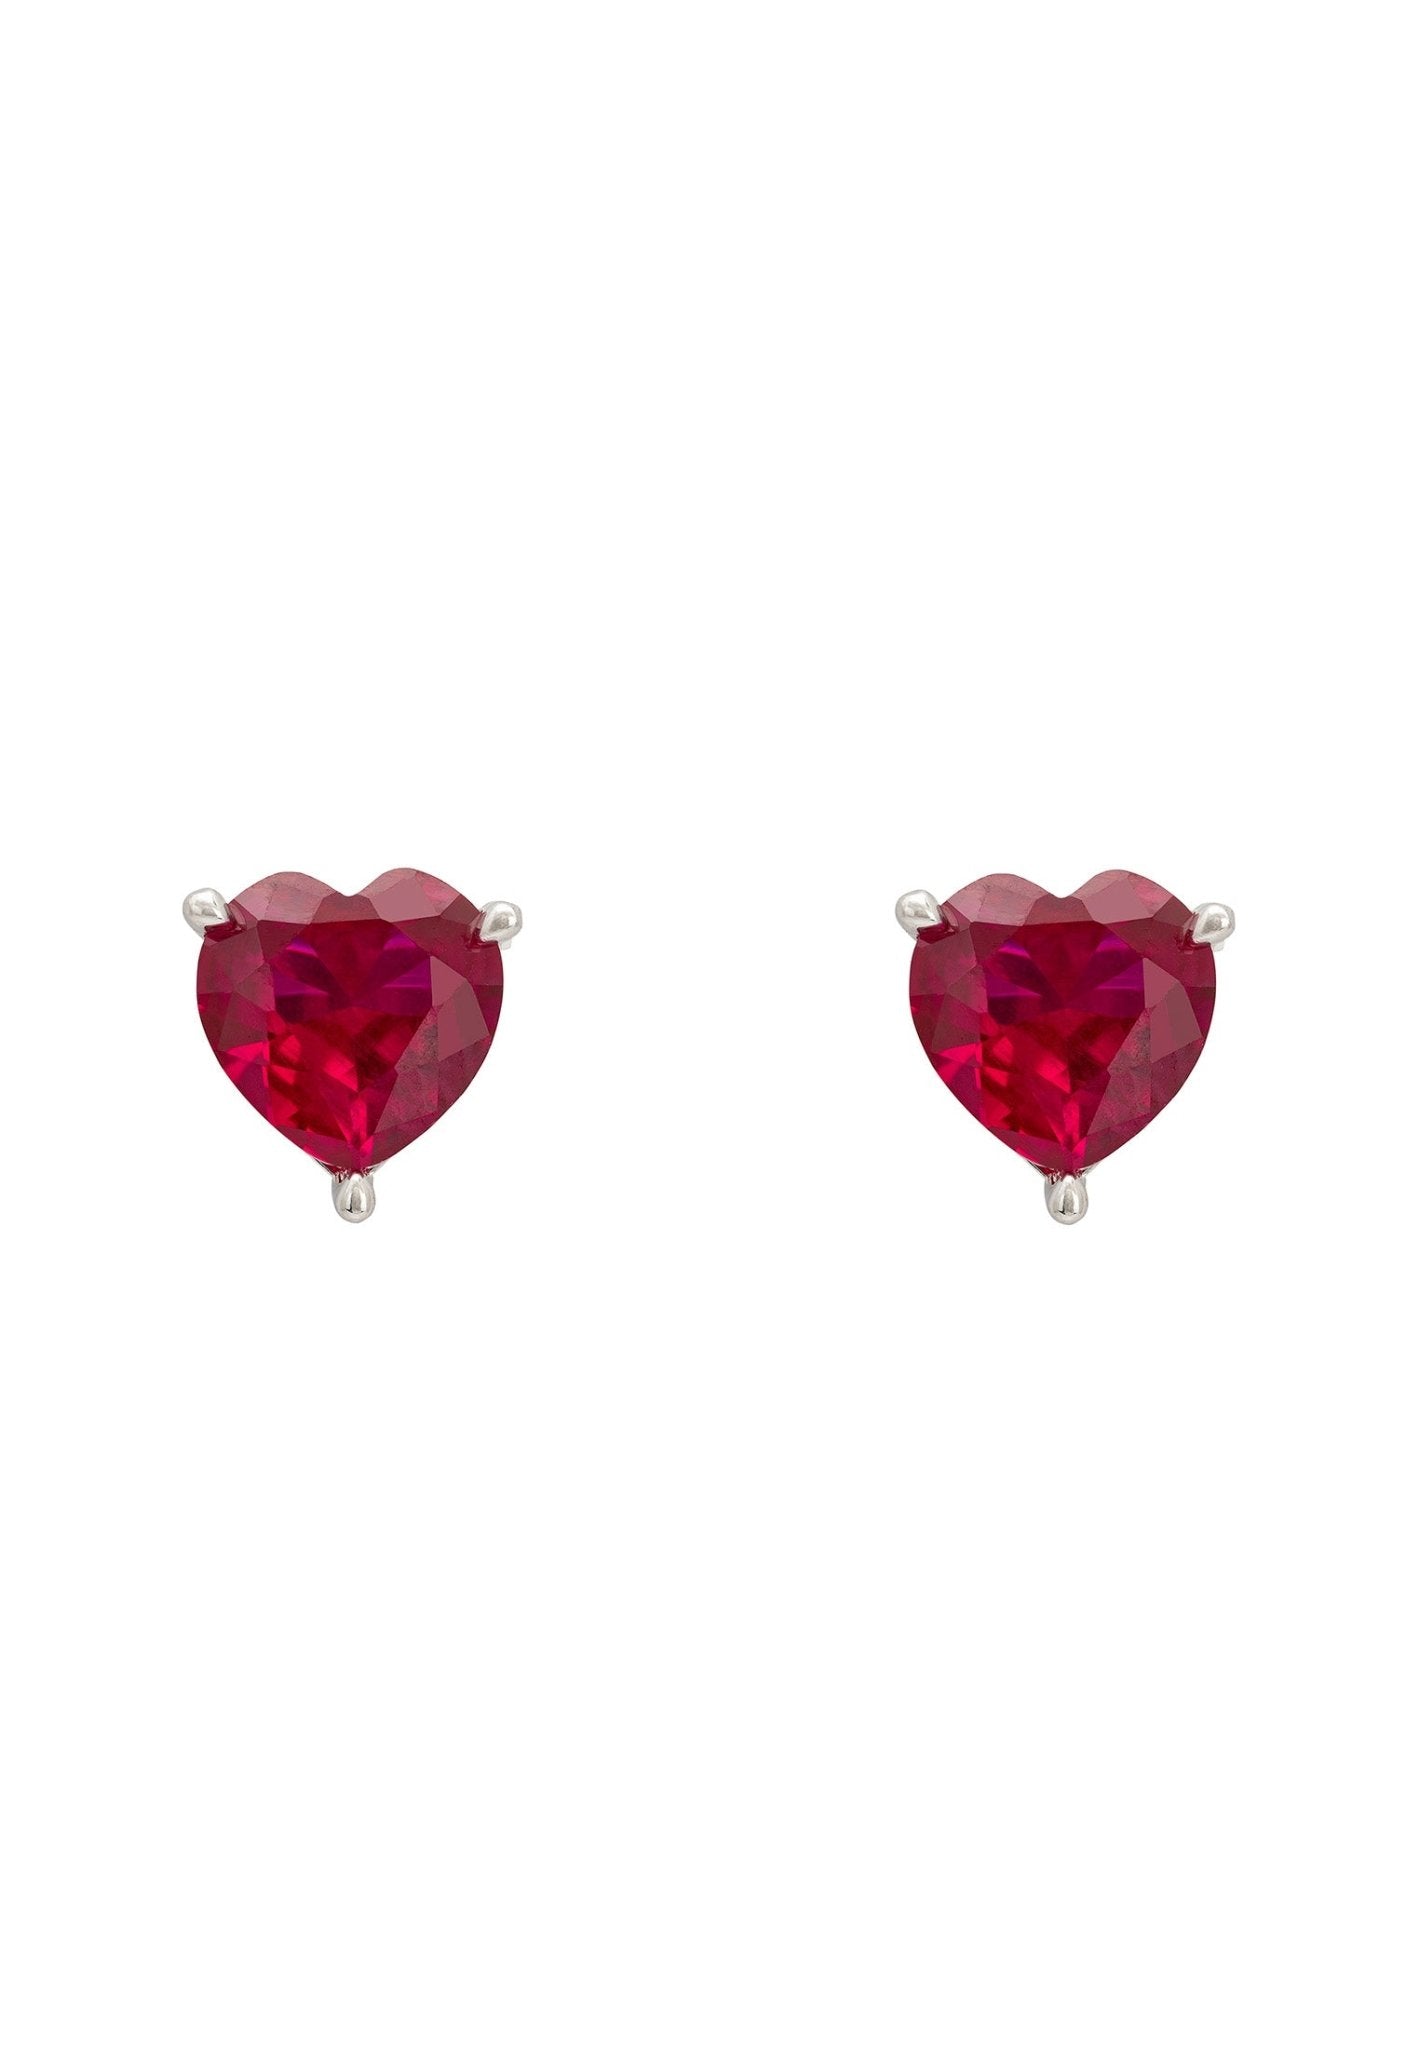 Amore Heart Stud Earrings Ruby Silver - LATELITA Earrings